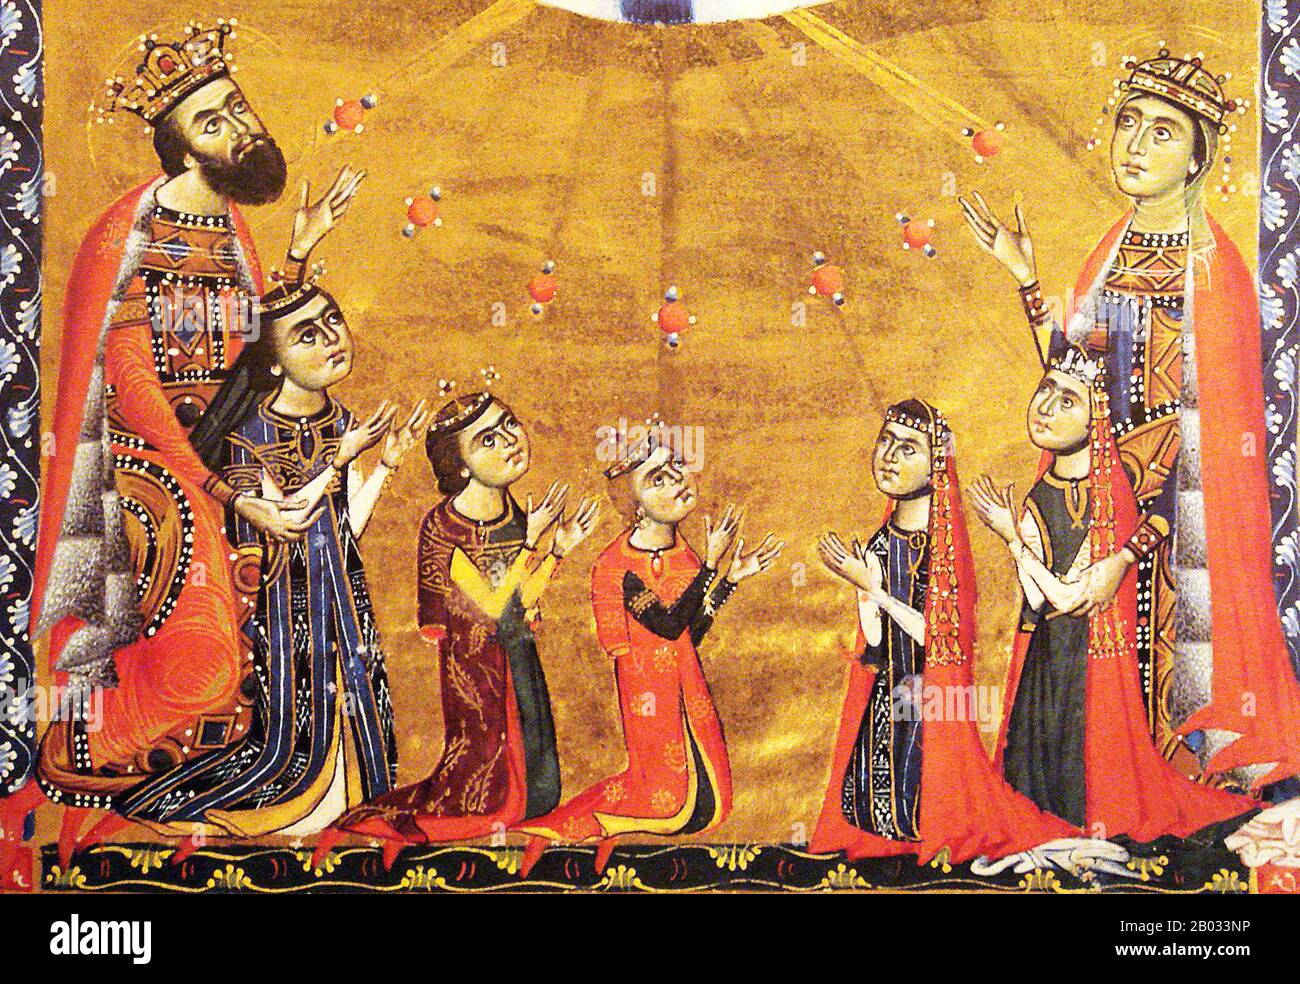 Leo II. Oder Leon II. (C 1236 - 1289) war König des Armenierreiches von Cilicia, das von 1269 /1270 bis 1289 regierte. Er war der Sohn von König Hetoum I. und Königin Isella und gehörte der Familie Hetoumid an. Stockfoto